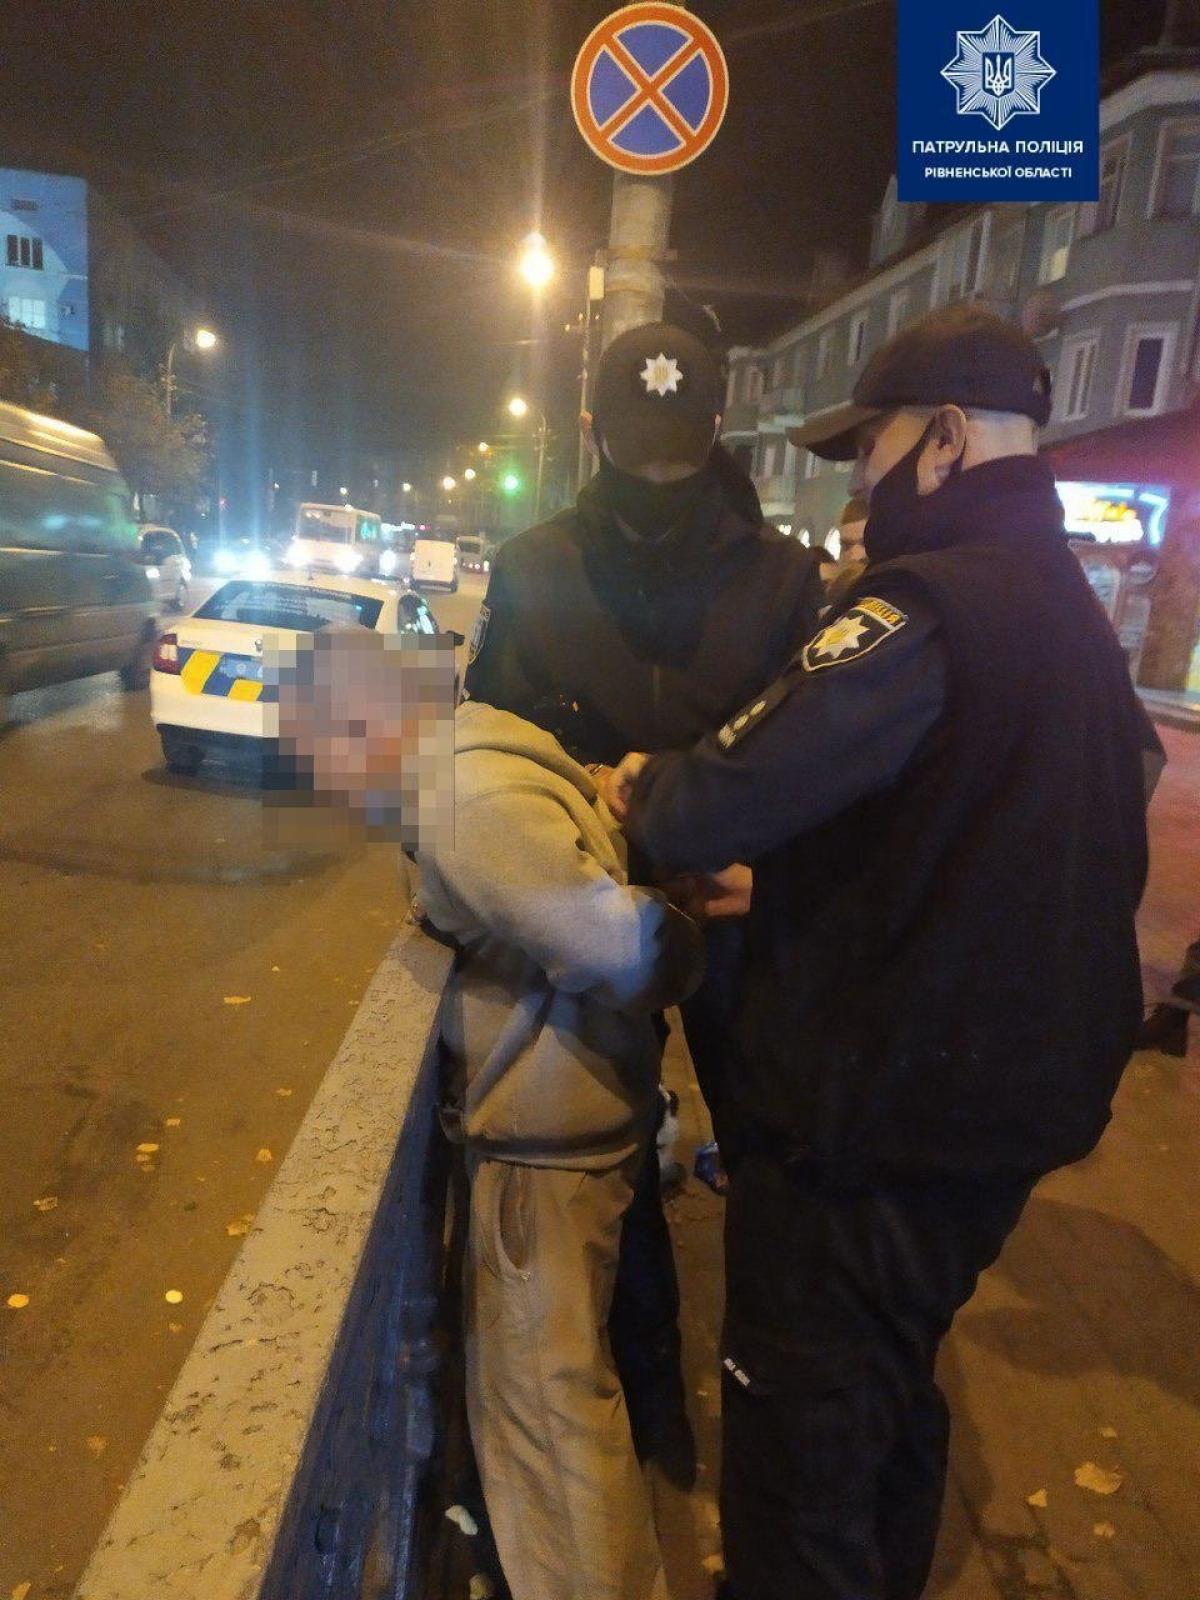 Джерело: Патрульна поліція Рівненської області